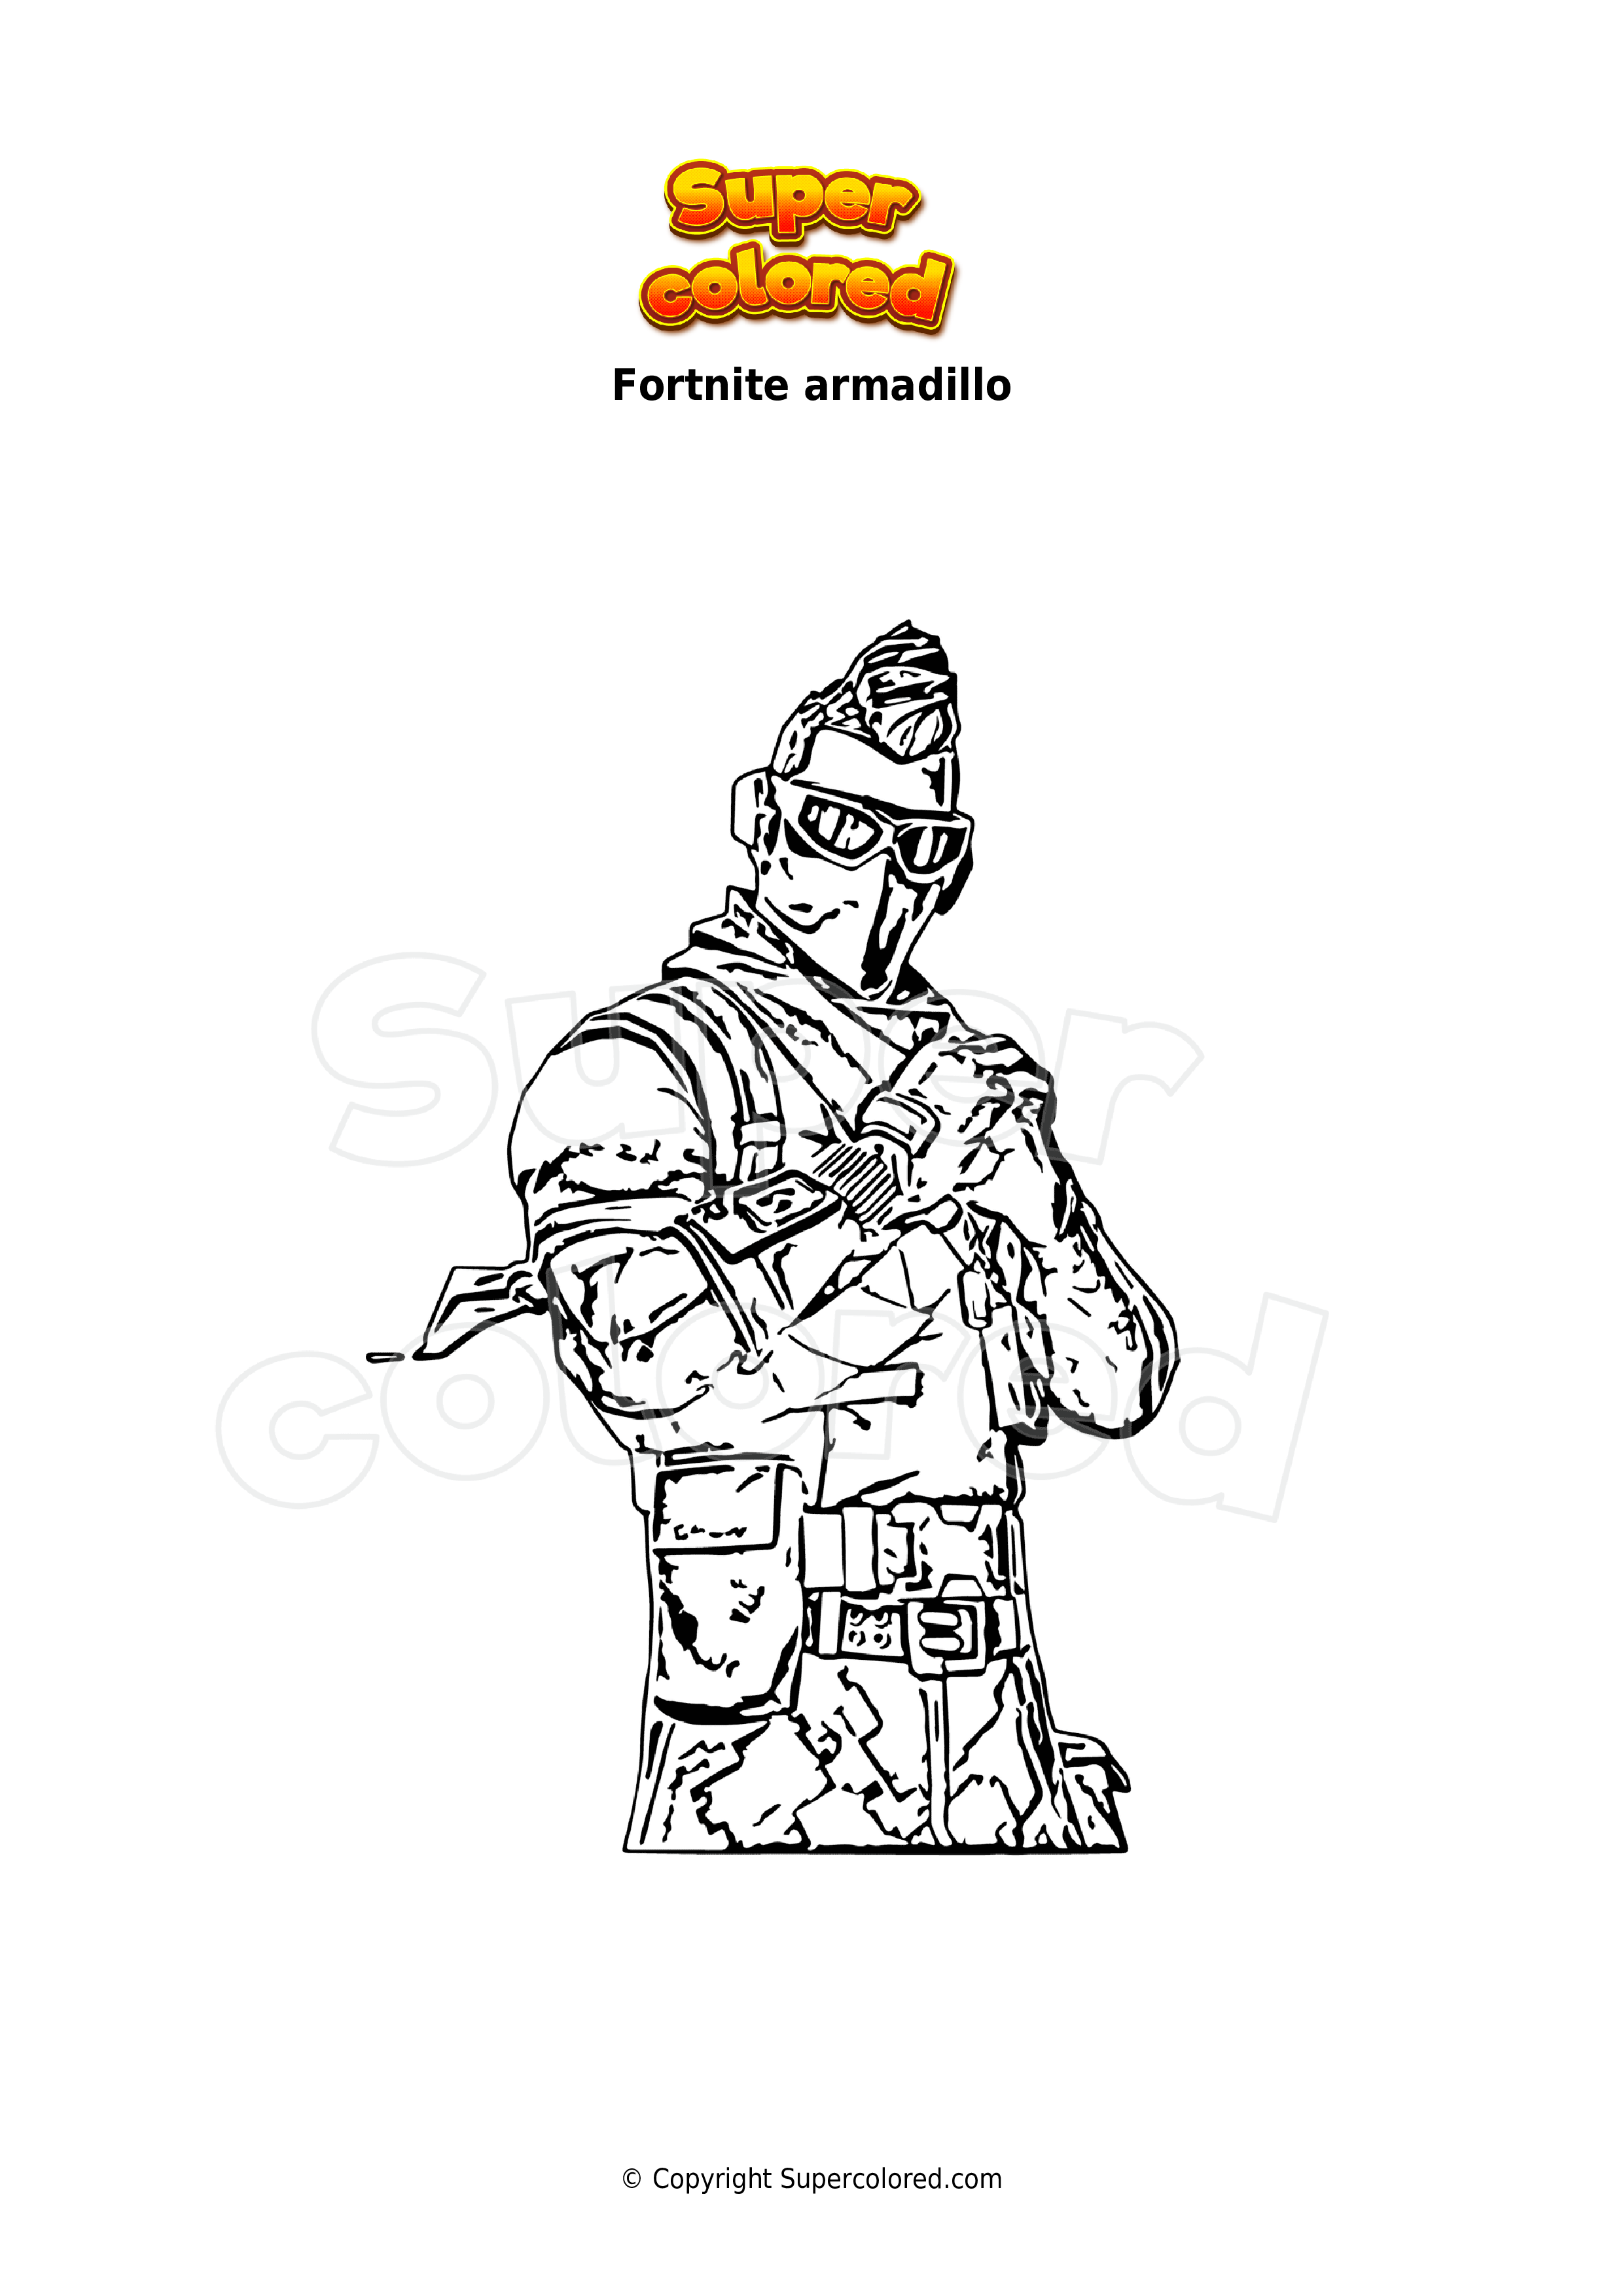 armadillo-fortnite-coloring-page